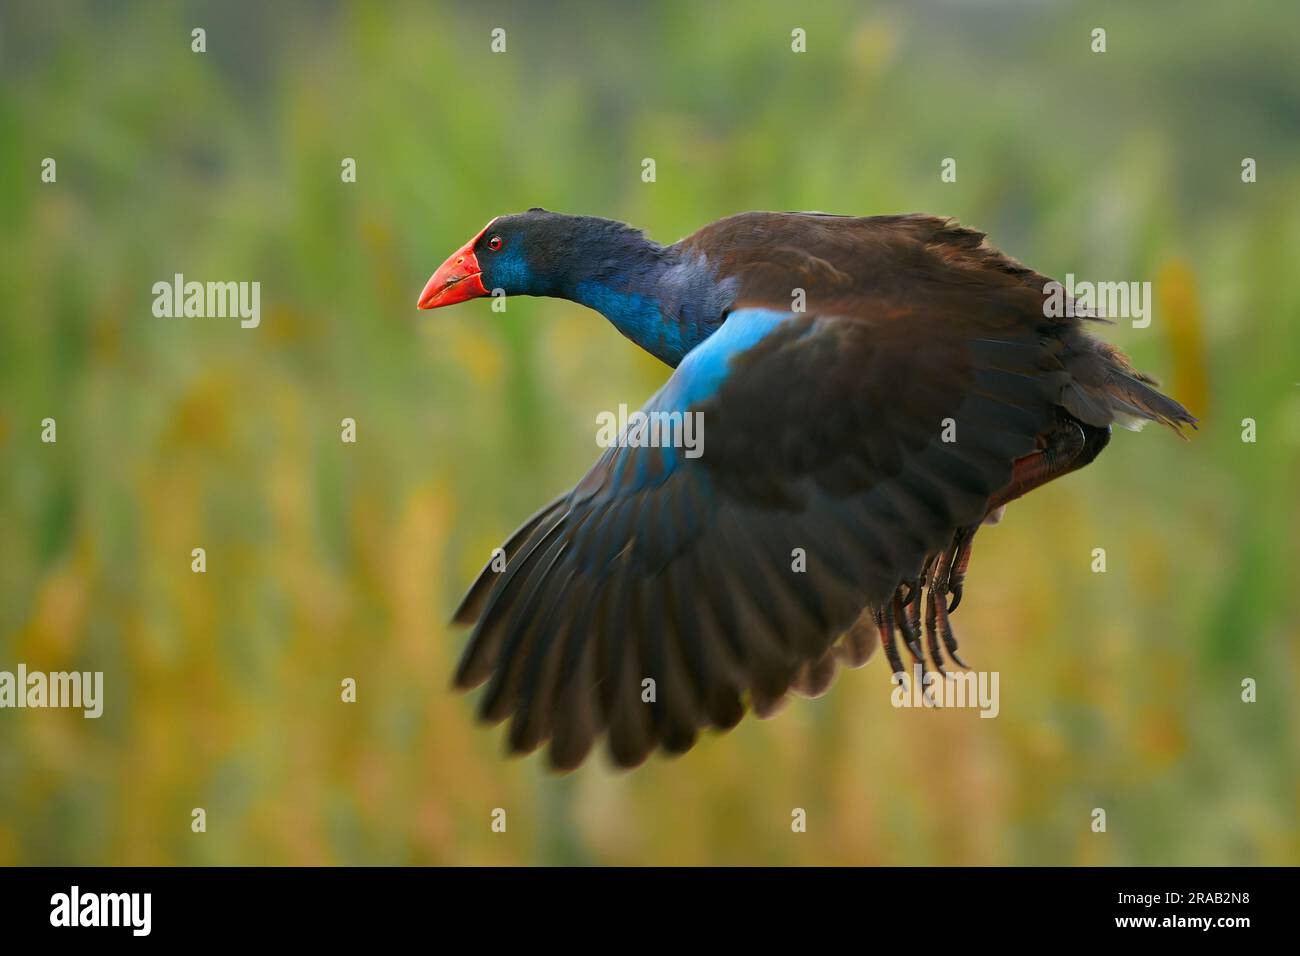 Le samphen Australasien volant (Porphyrio melanotus), un bel oiseau de zone humide intéressant. Oiseau coloré, bleu avec bec rouge avec beau vert et orange Banque D'Images